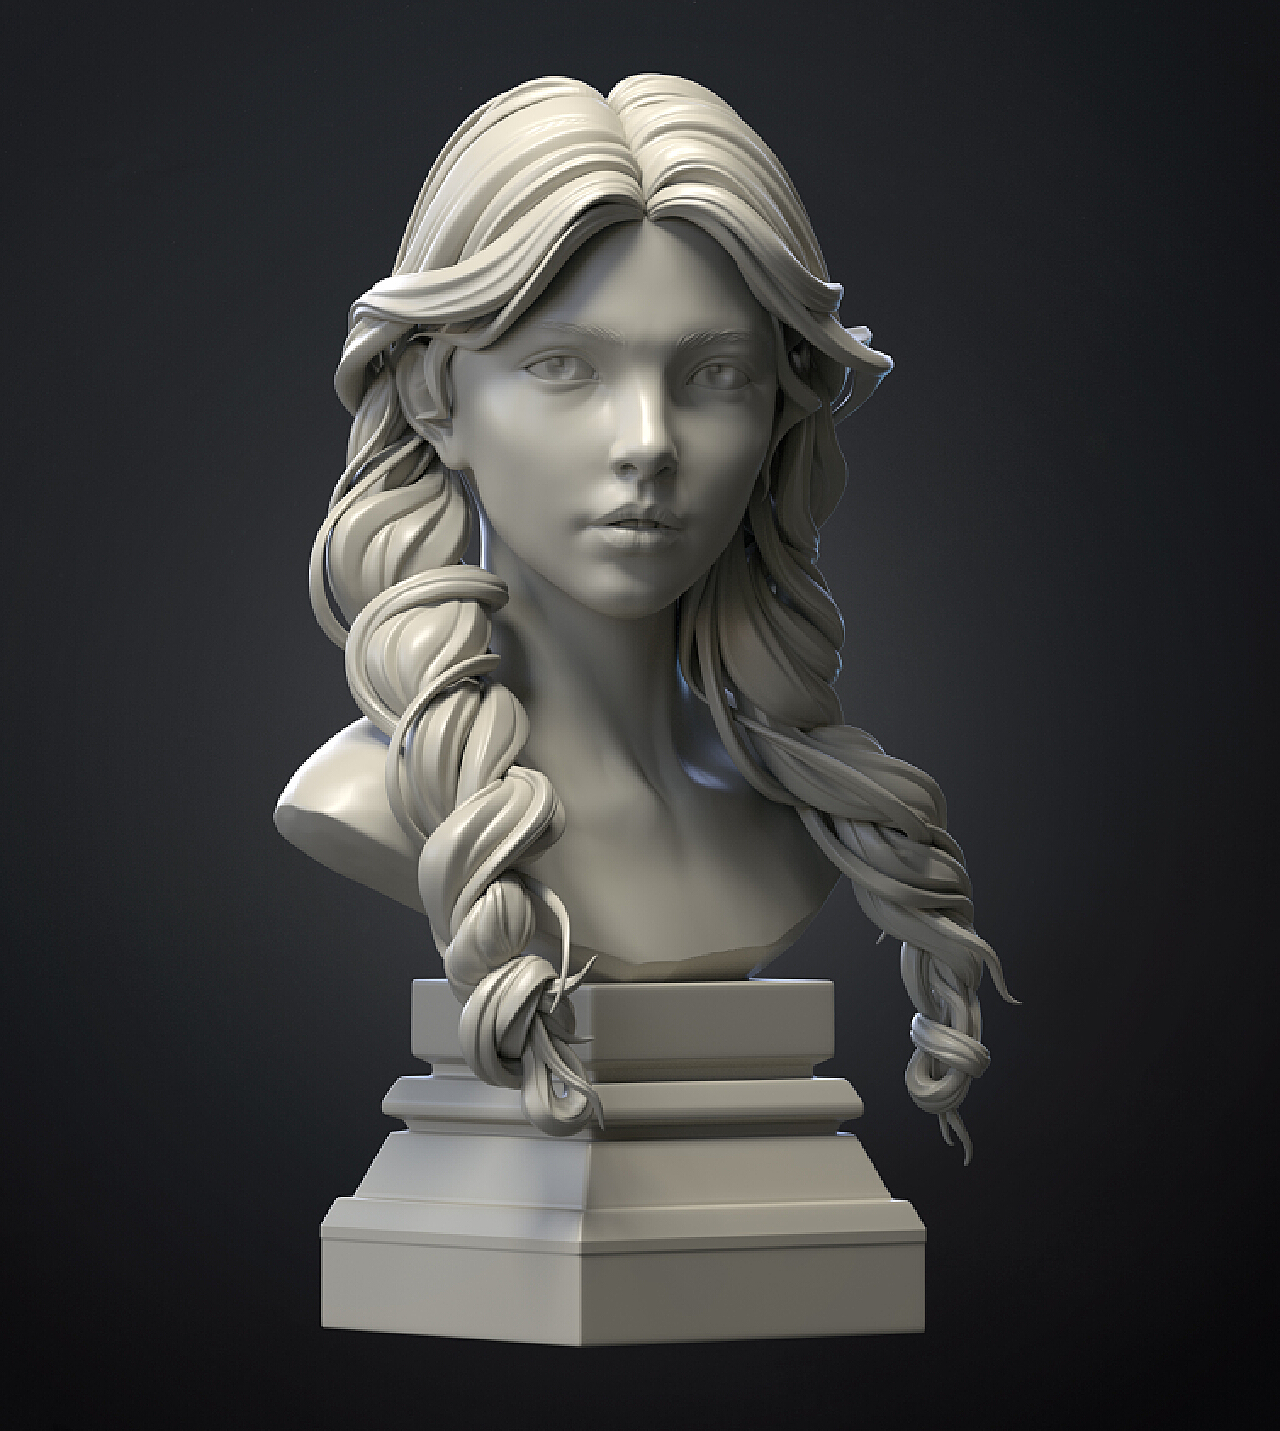 现代小女孩雕塑3D模型下载【ID:1131616673】_知末3d模型网